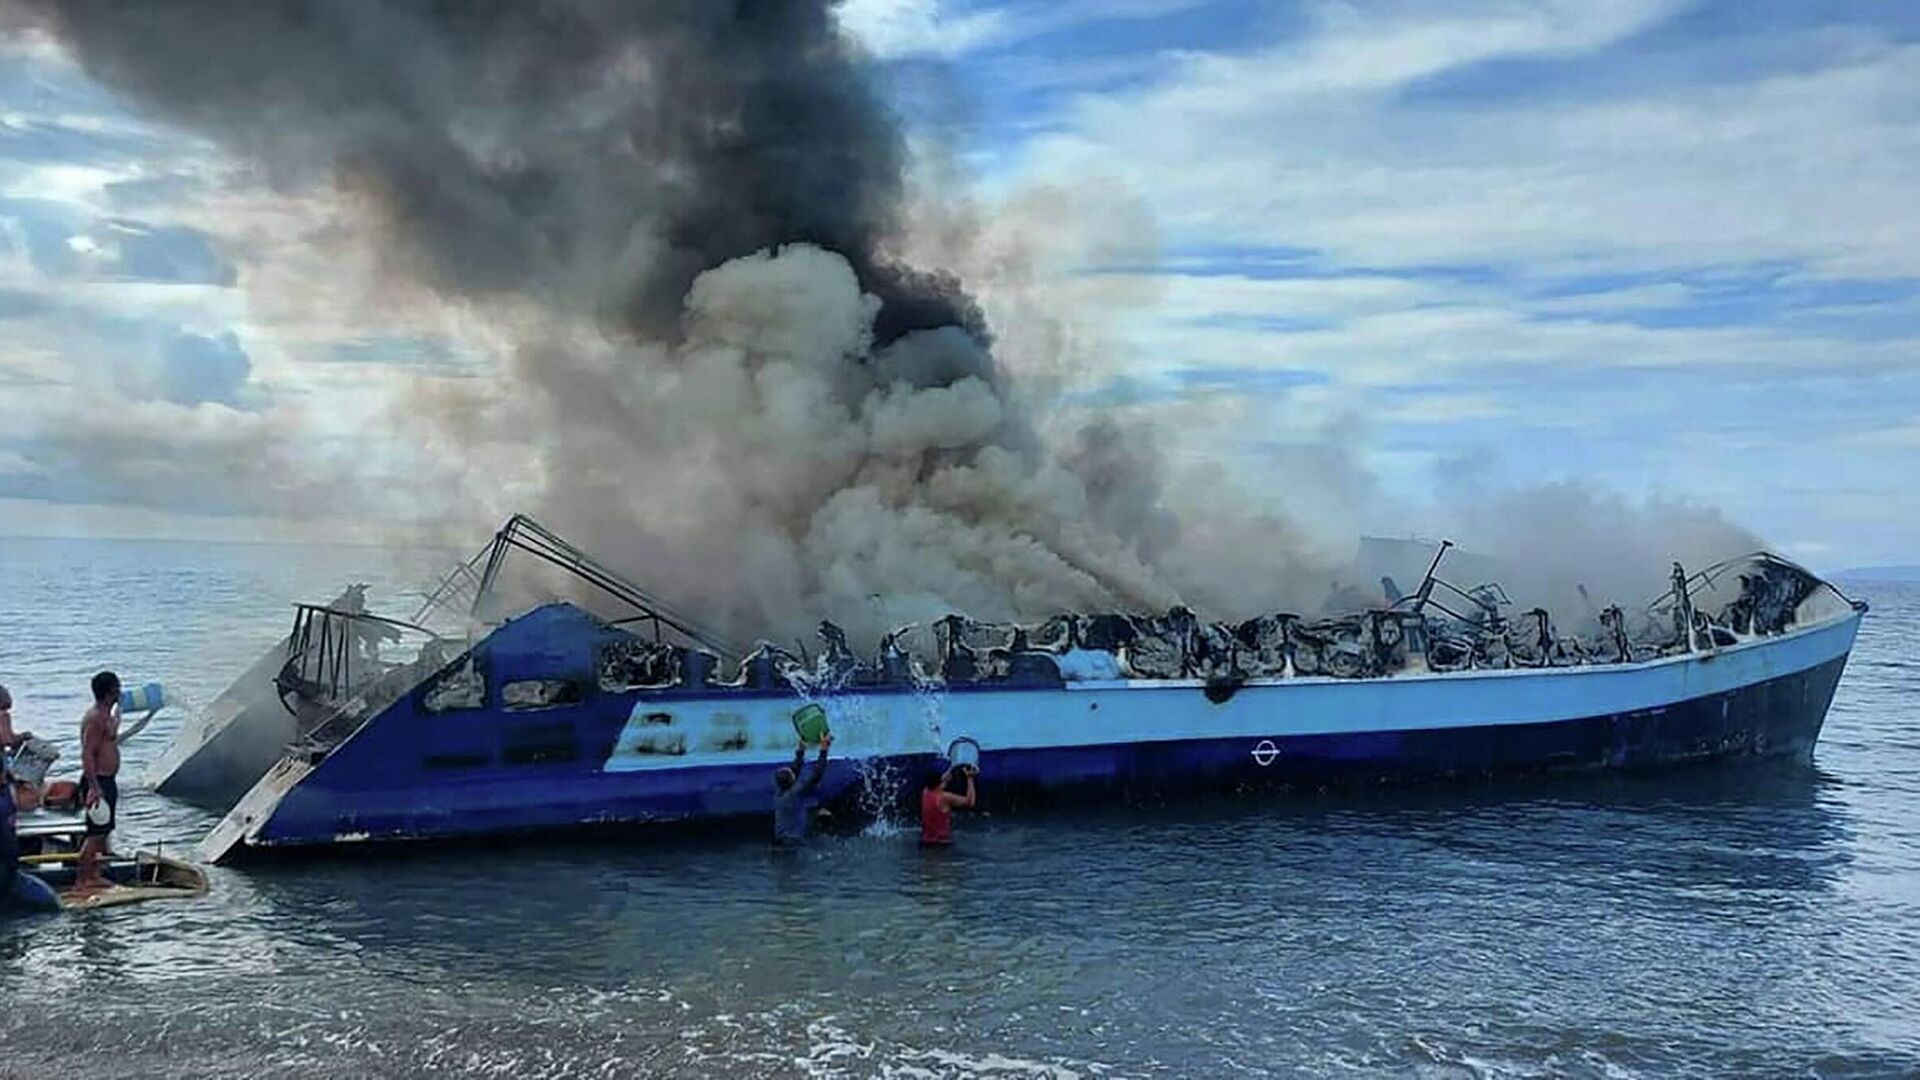 На Филиппинах загорелся корабль с более чем 130 пассажирами, есть погибшие — видео